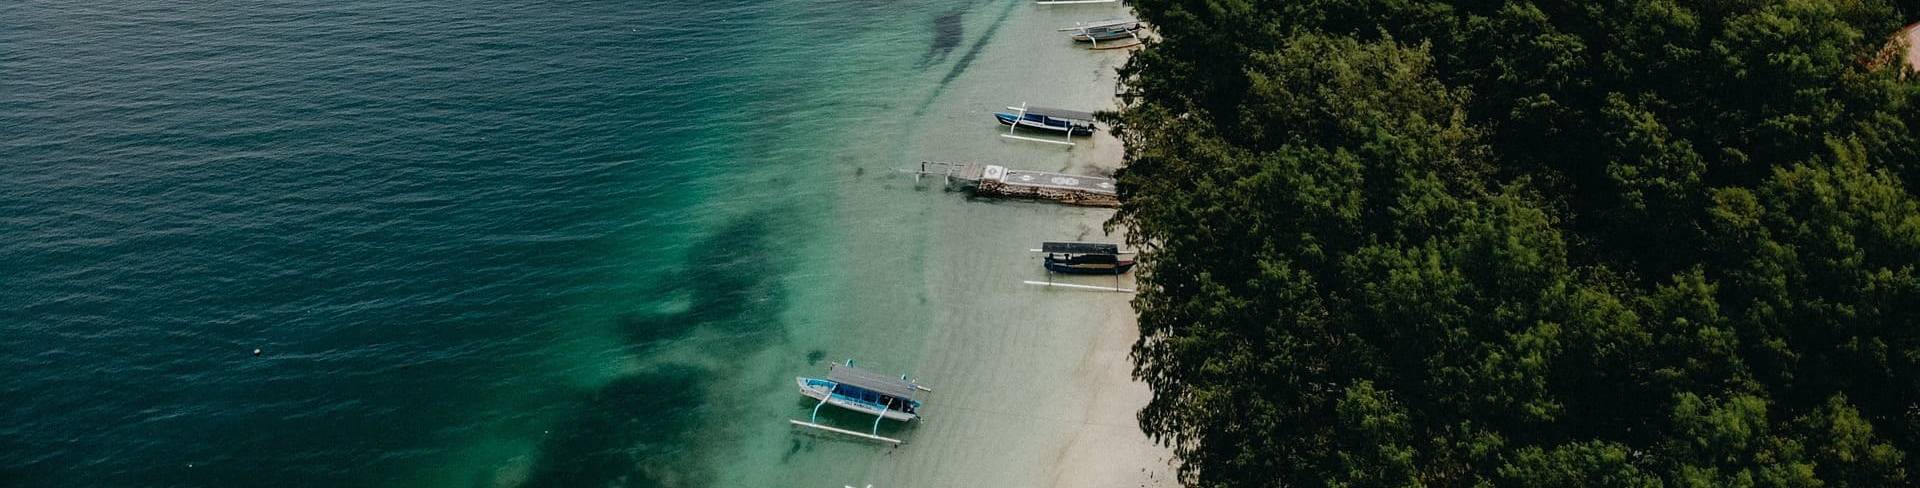 Остров Ломбок второй по популярности после Бали пляжный курорт Индонезии